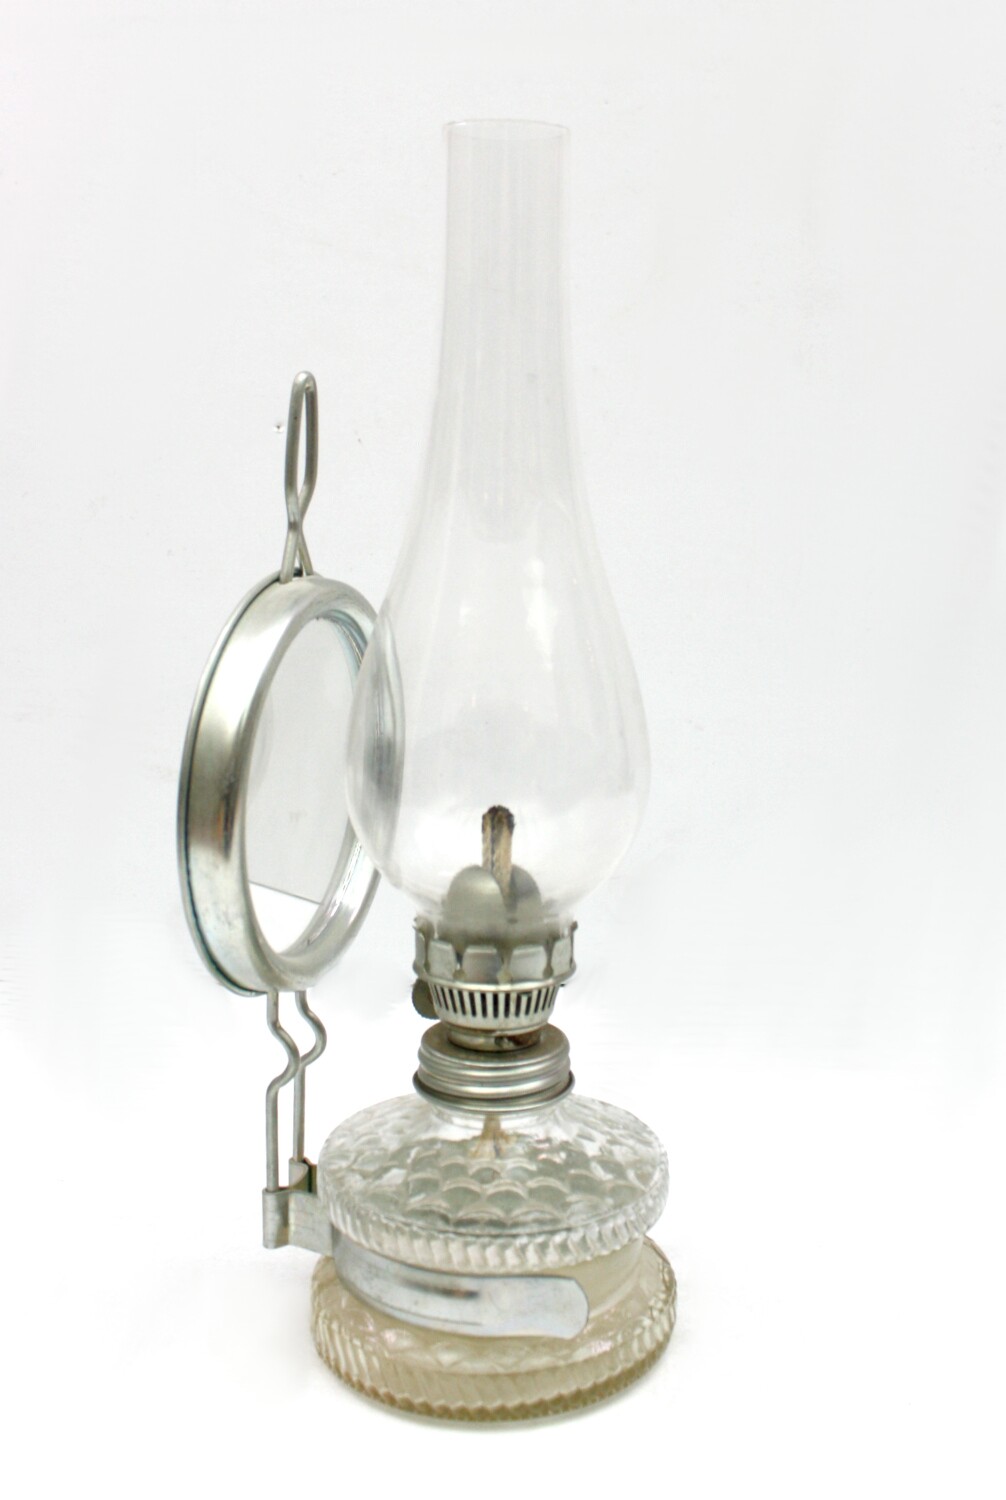 Petroleumlampe mit Spiegel (Drilandmuseum CC BY-NC-SA)